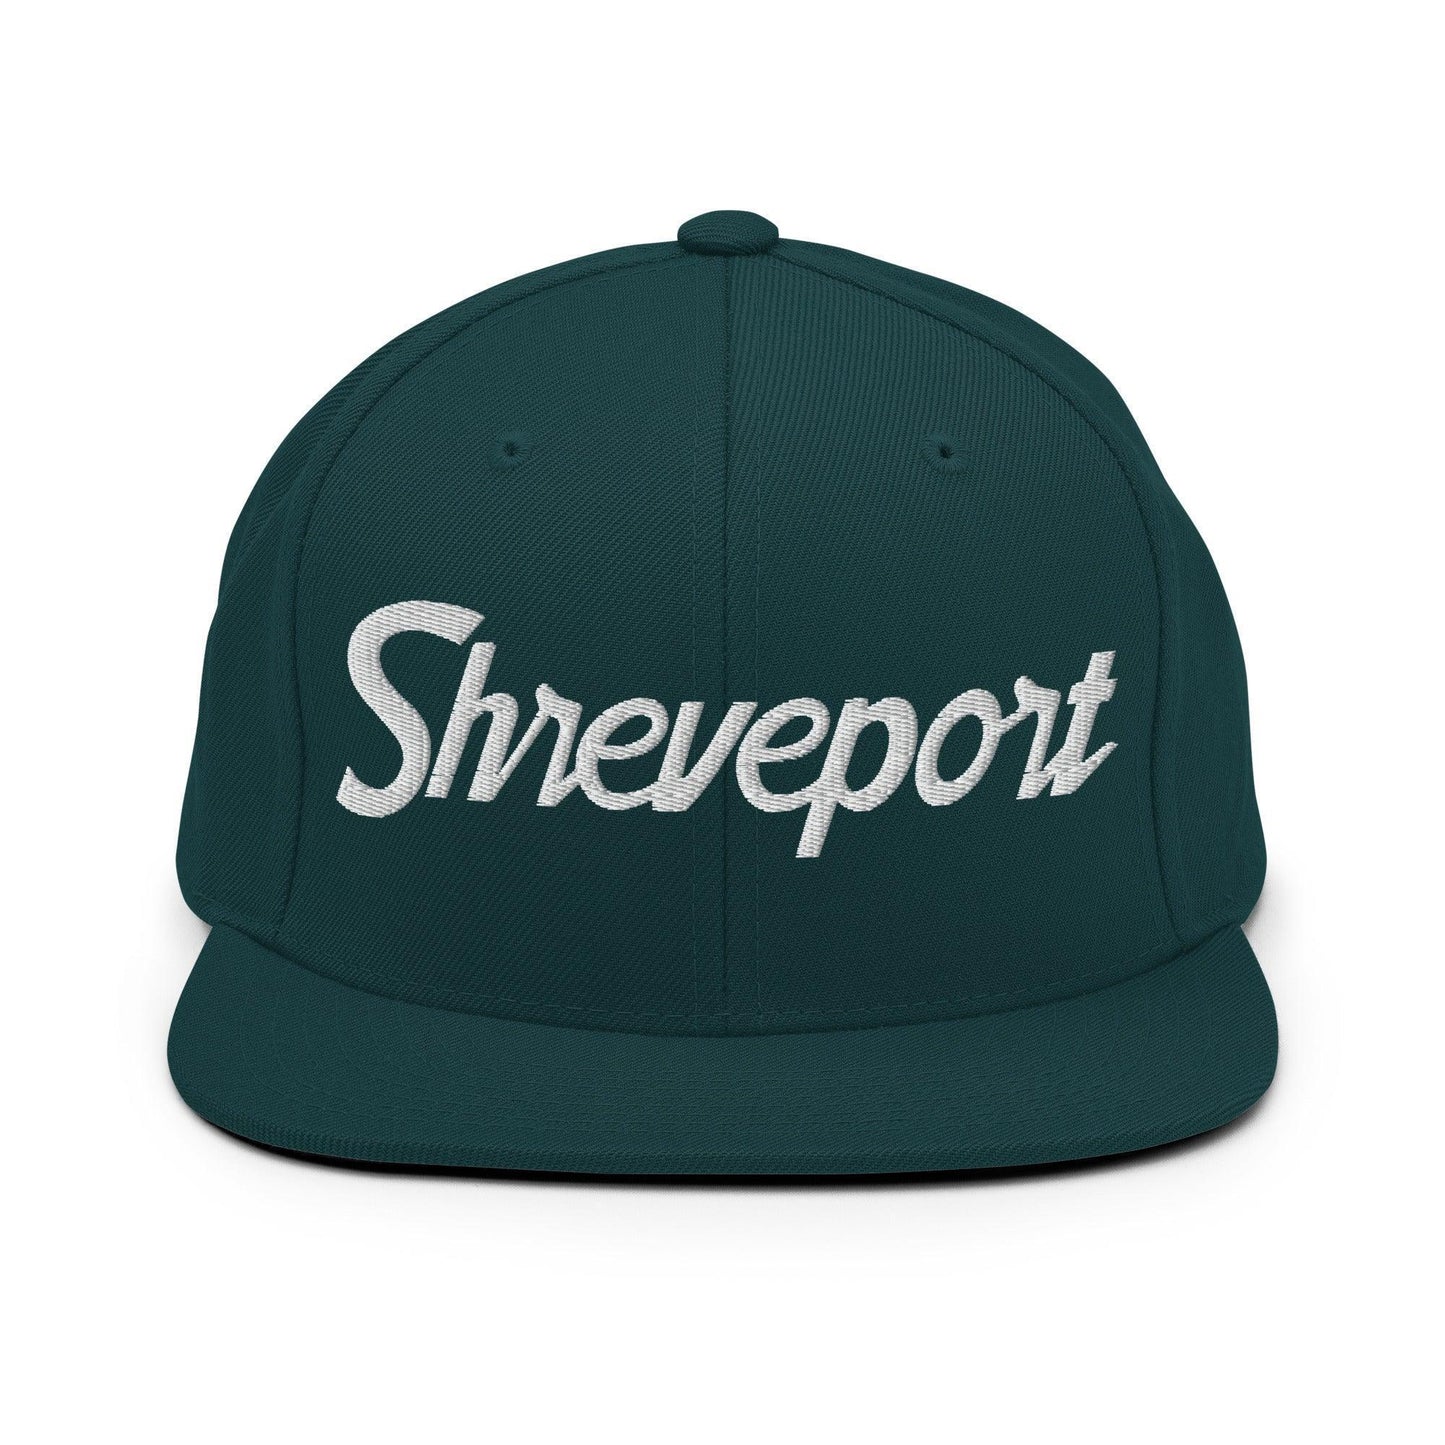 Shreveport Script Snapback Hat Spruce